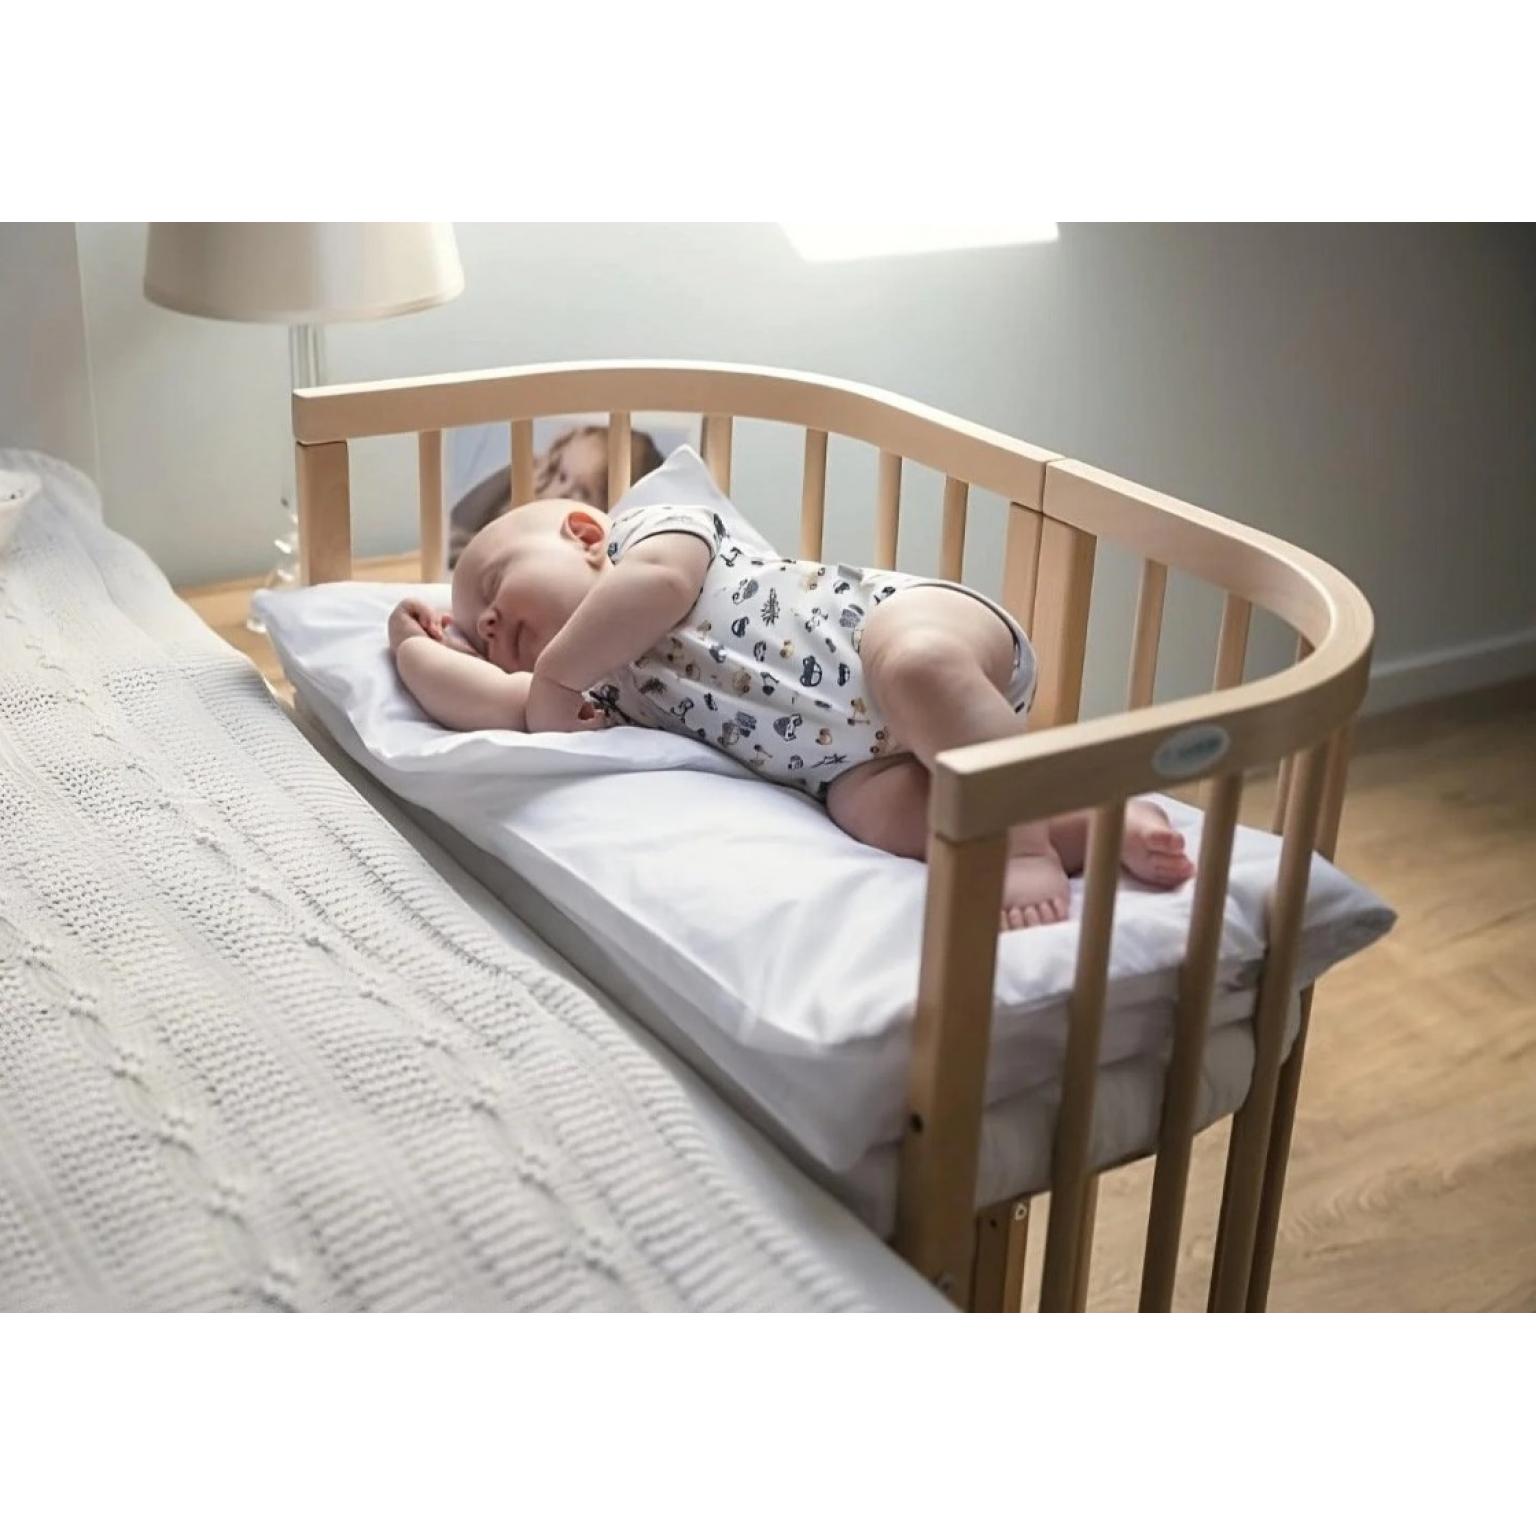 Ovāla-apaļa-bērnu-gulta + matracis Daudzfunkcionāla -7 vienā – Waldin – Gray (6)